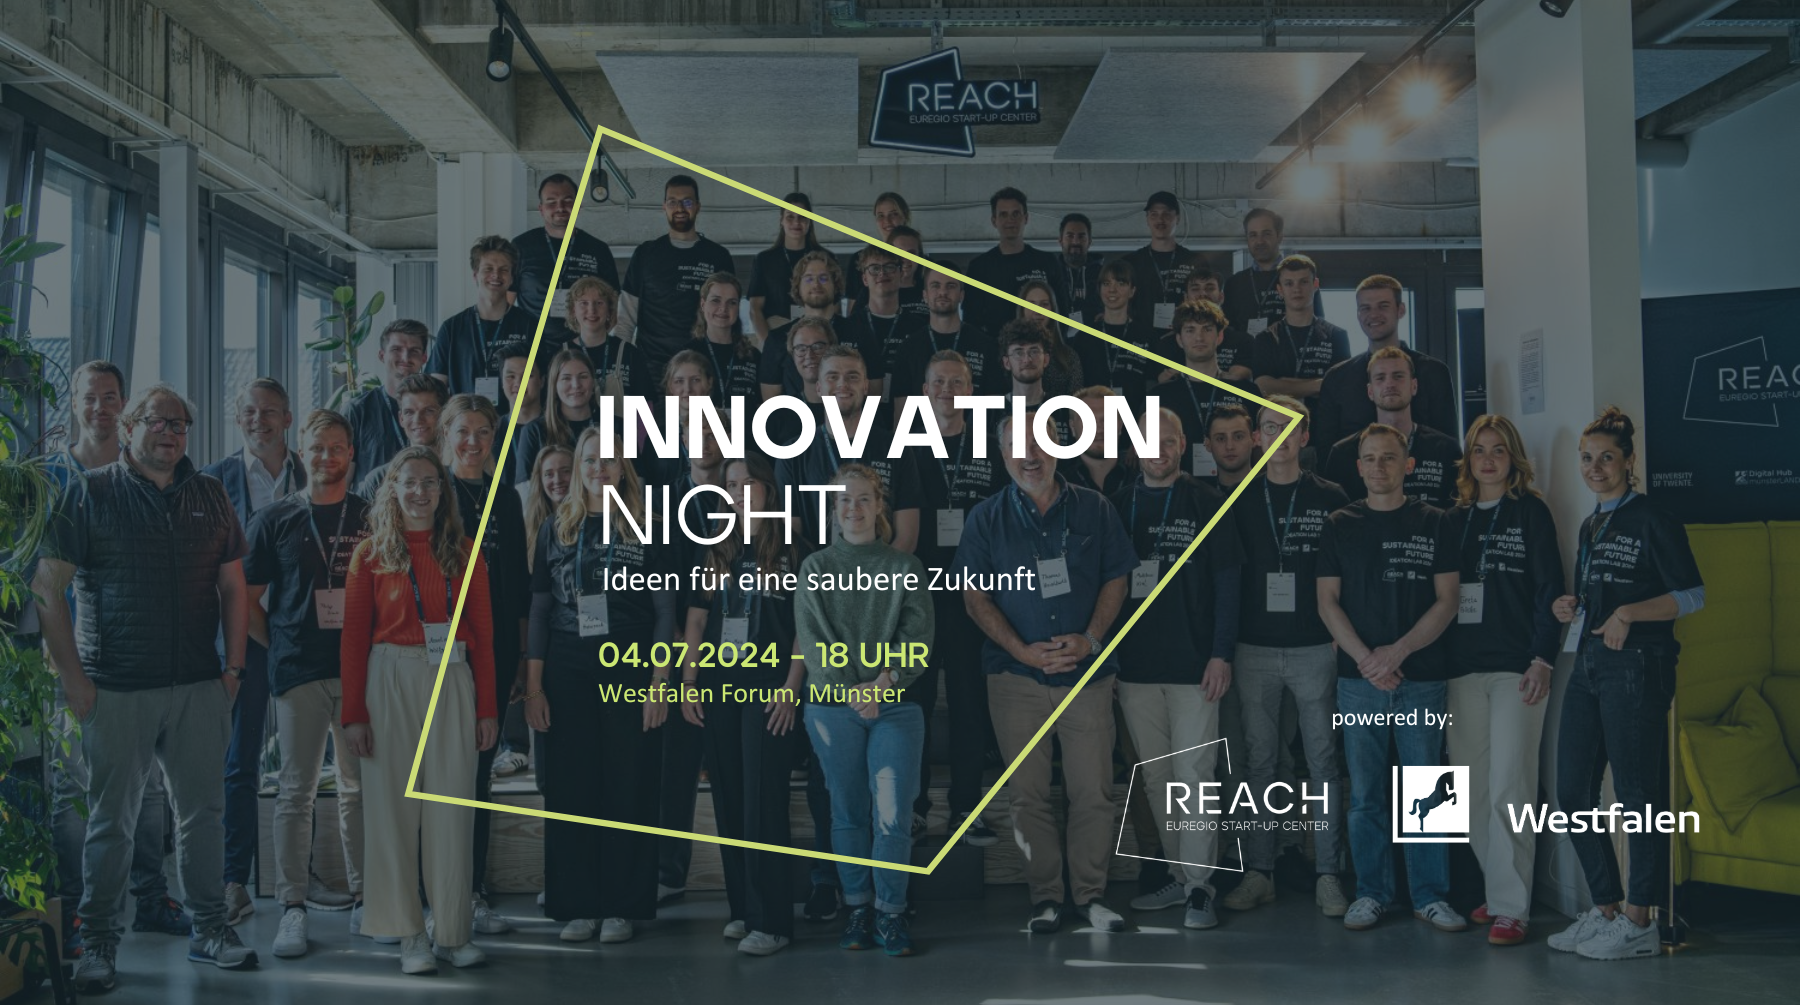 Innovation Night - Ideen für eine saubere Zukunft (powered by REACH & Westfalen)